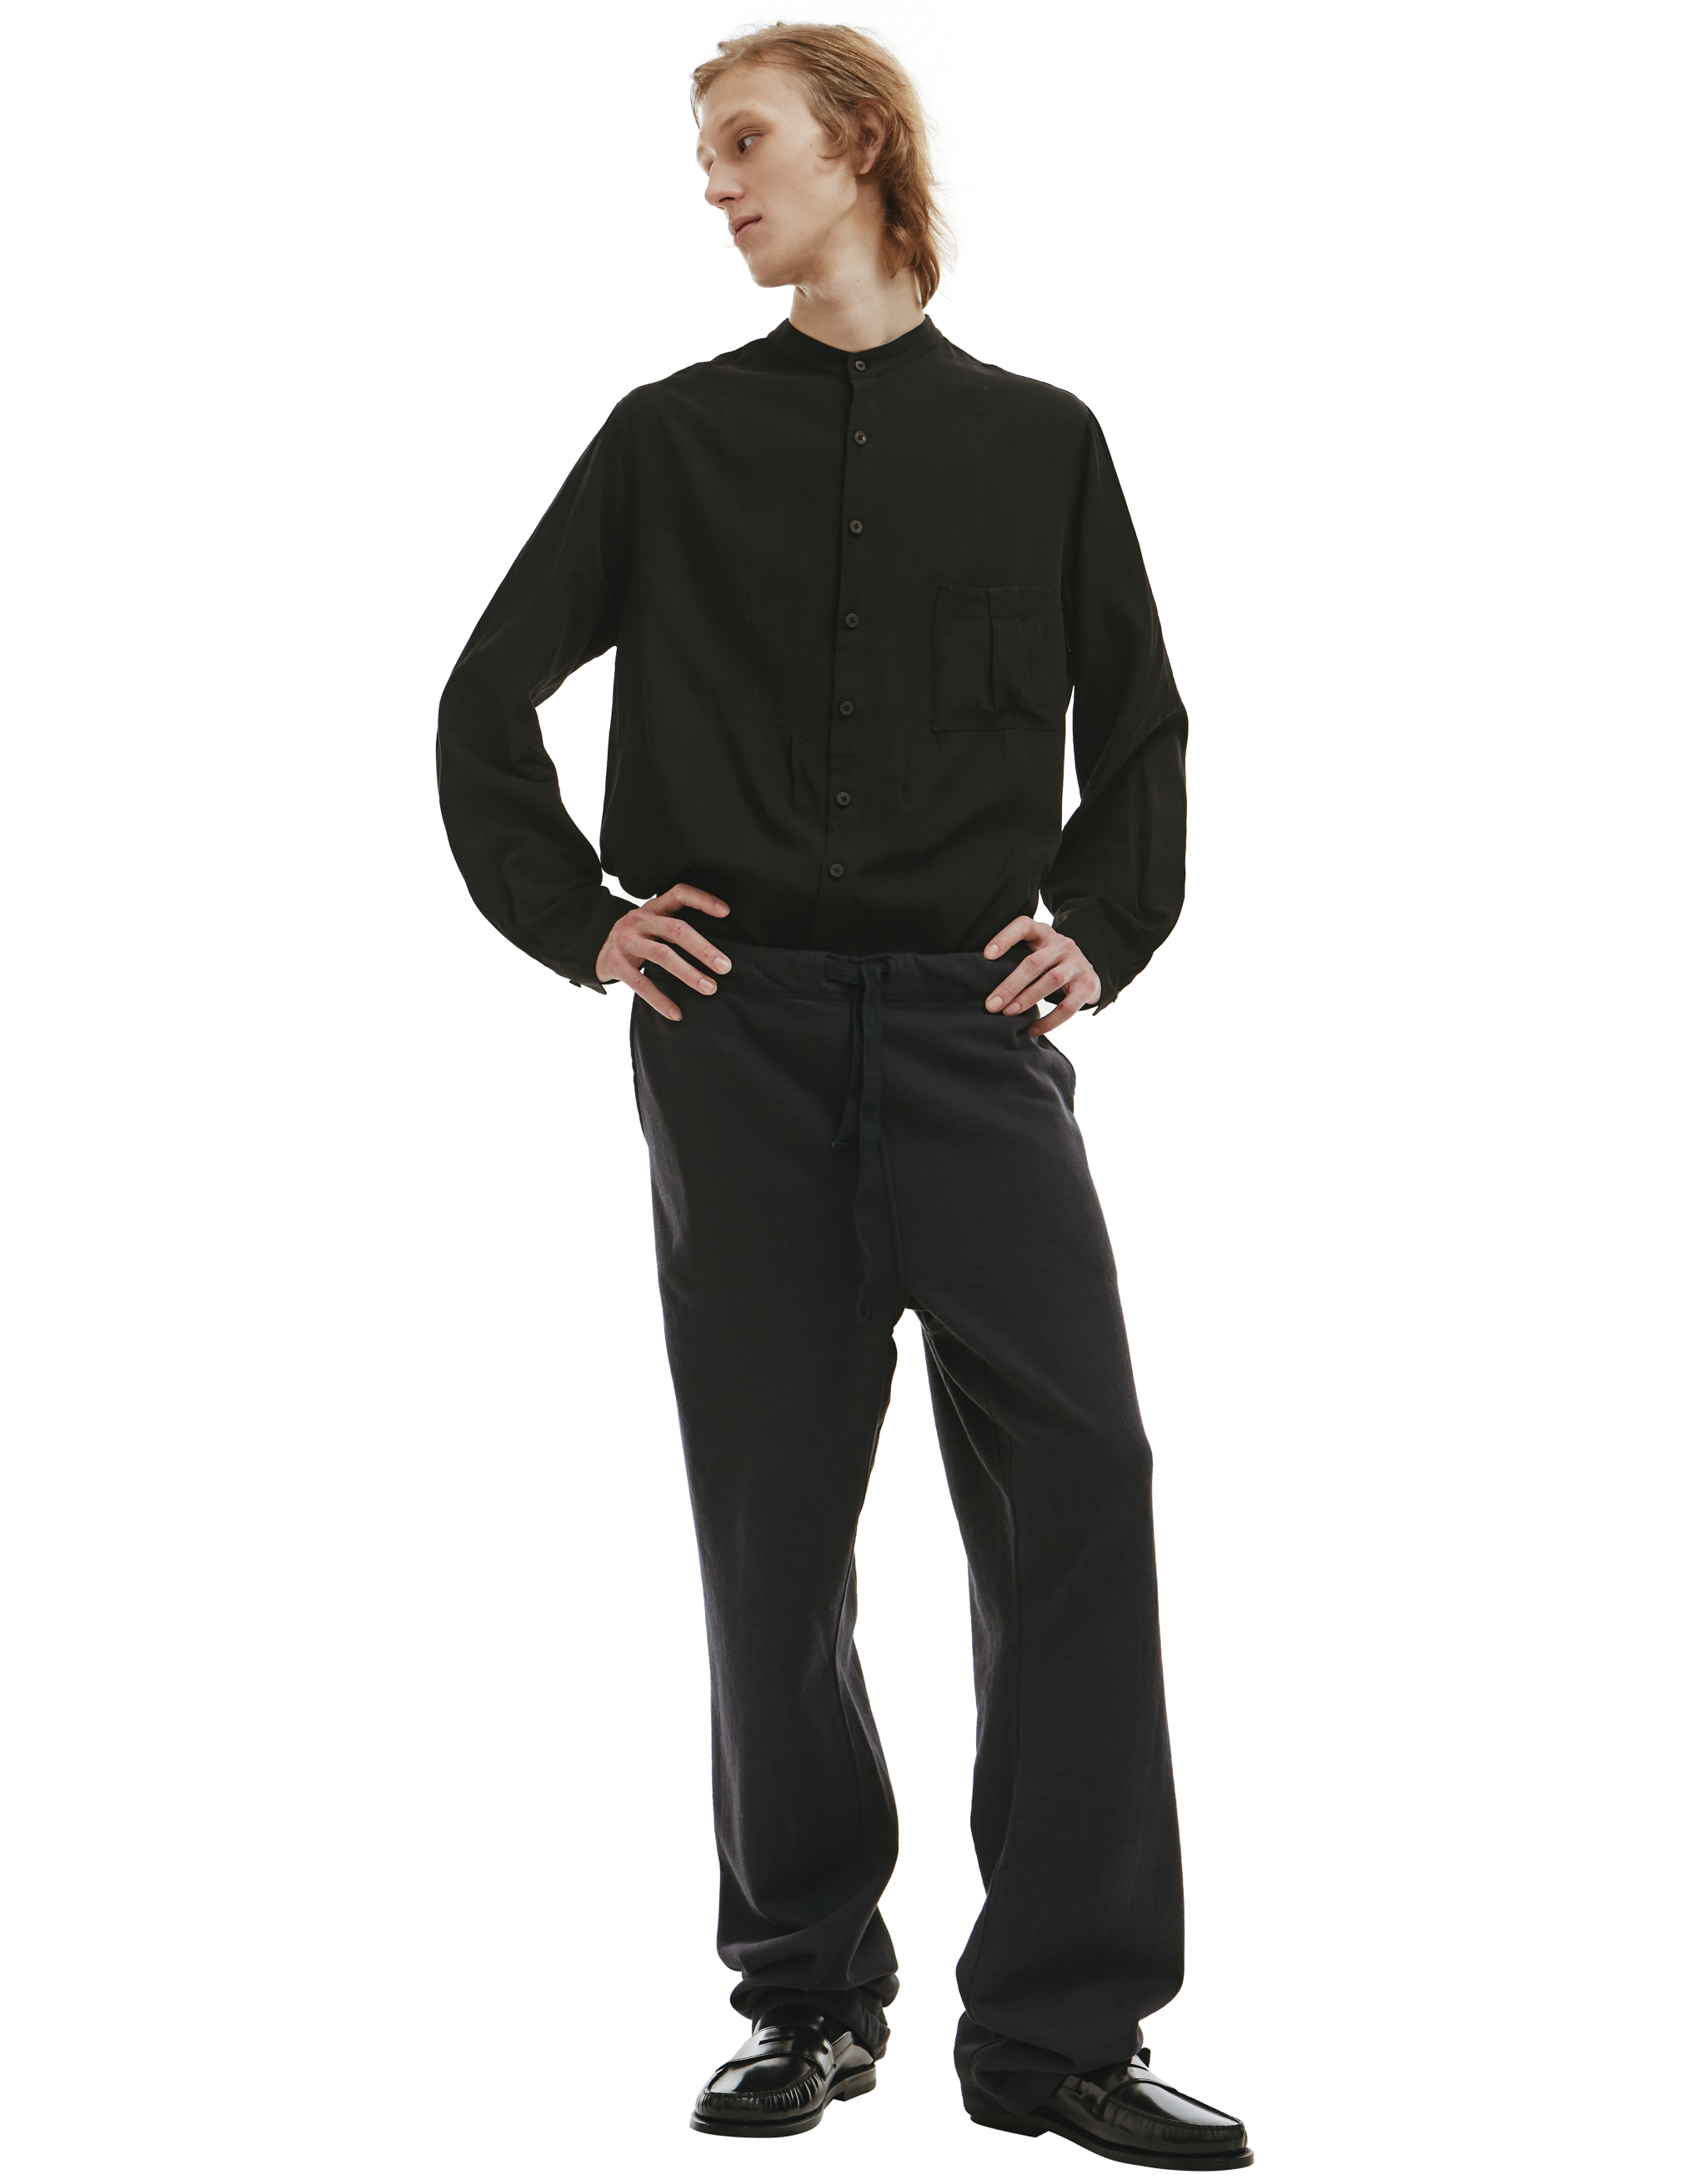 Кашемировые брюки на кулиске visvim 0122205010021, размер 5